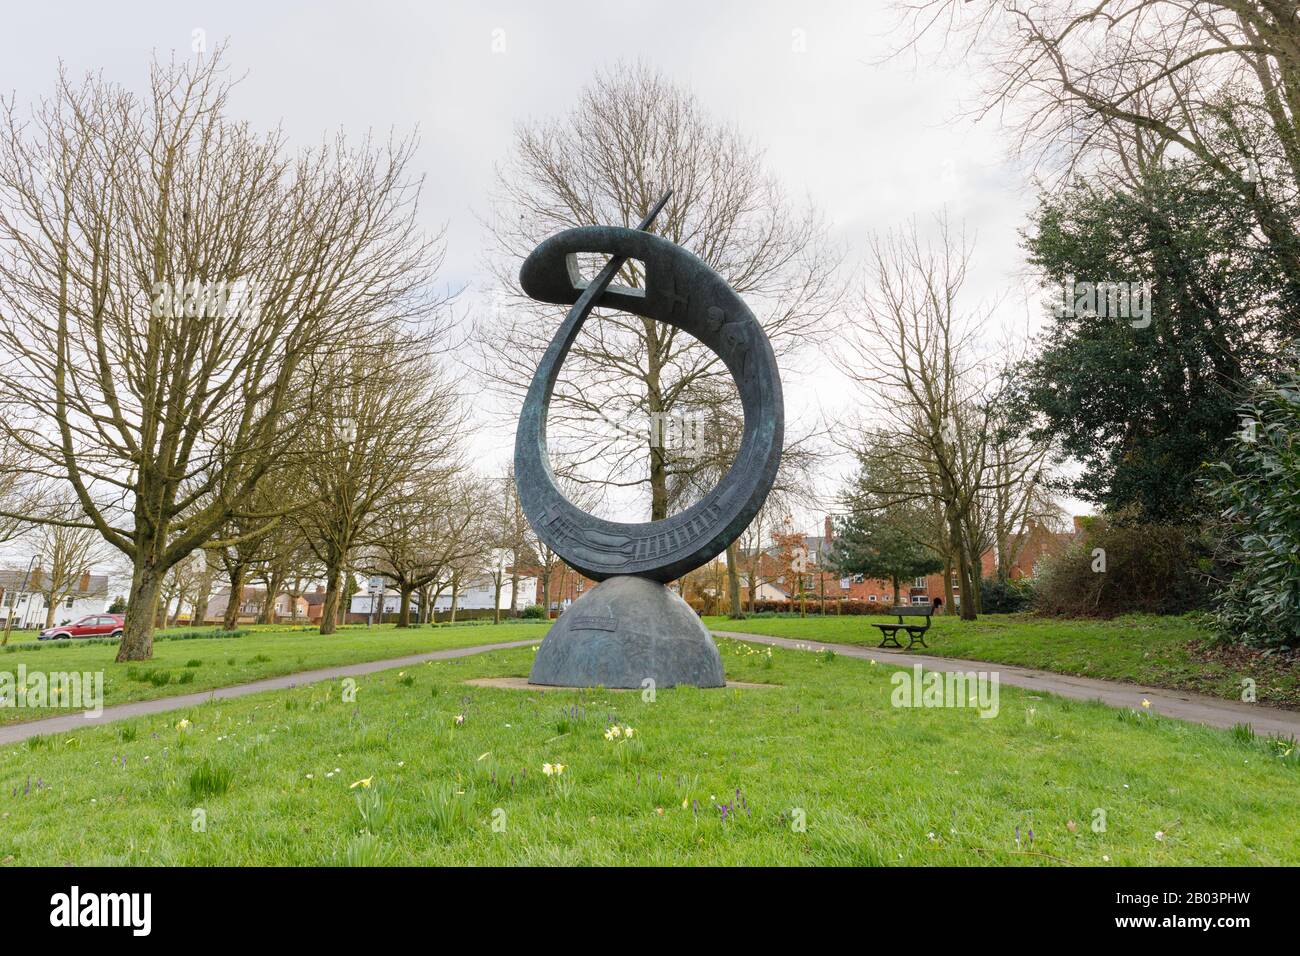 Rugby, Regno Unito, febbraio 2020: Sir Frank Whittle Memorial Sculpture di Stephen Broadbent si trova in Chestnut Fields spazio pubblico circondato da alberi maturi. Foto Stock